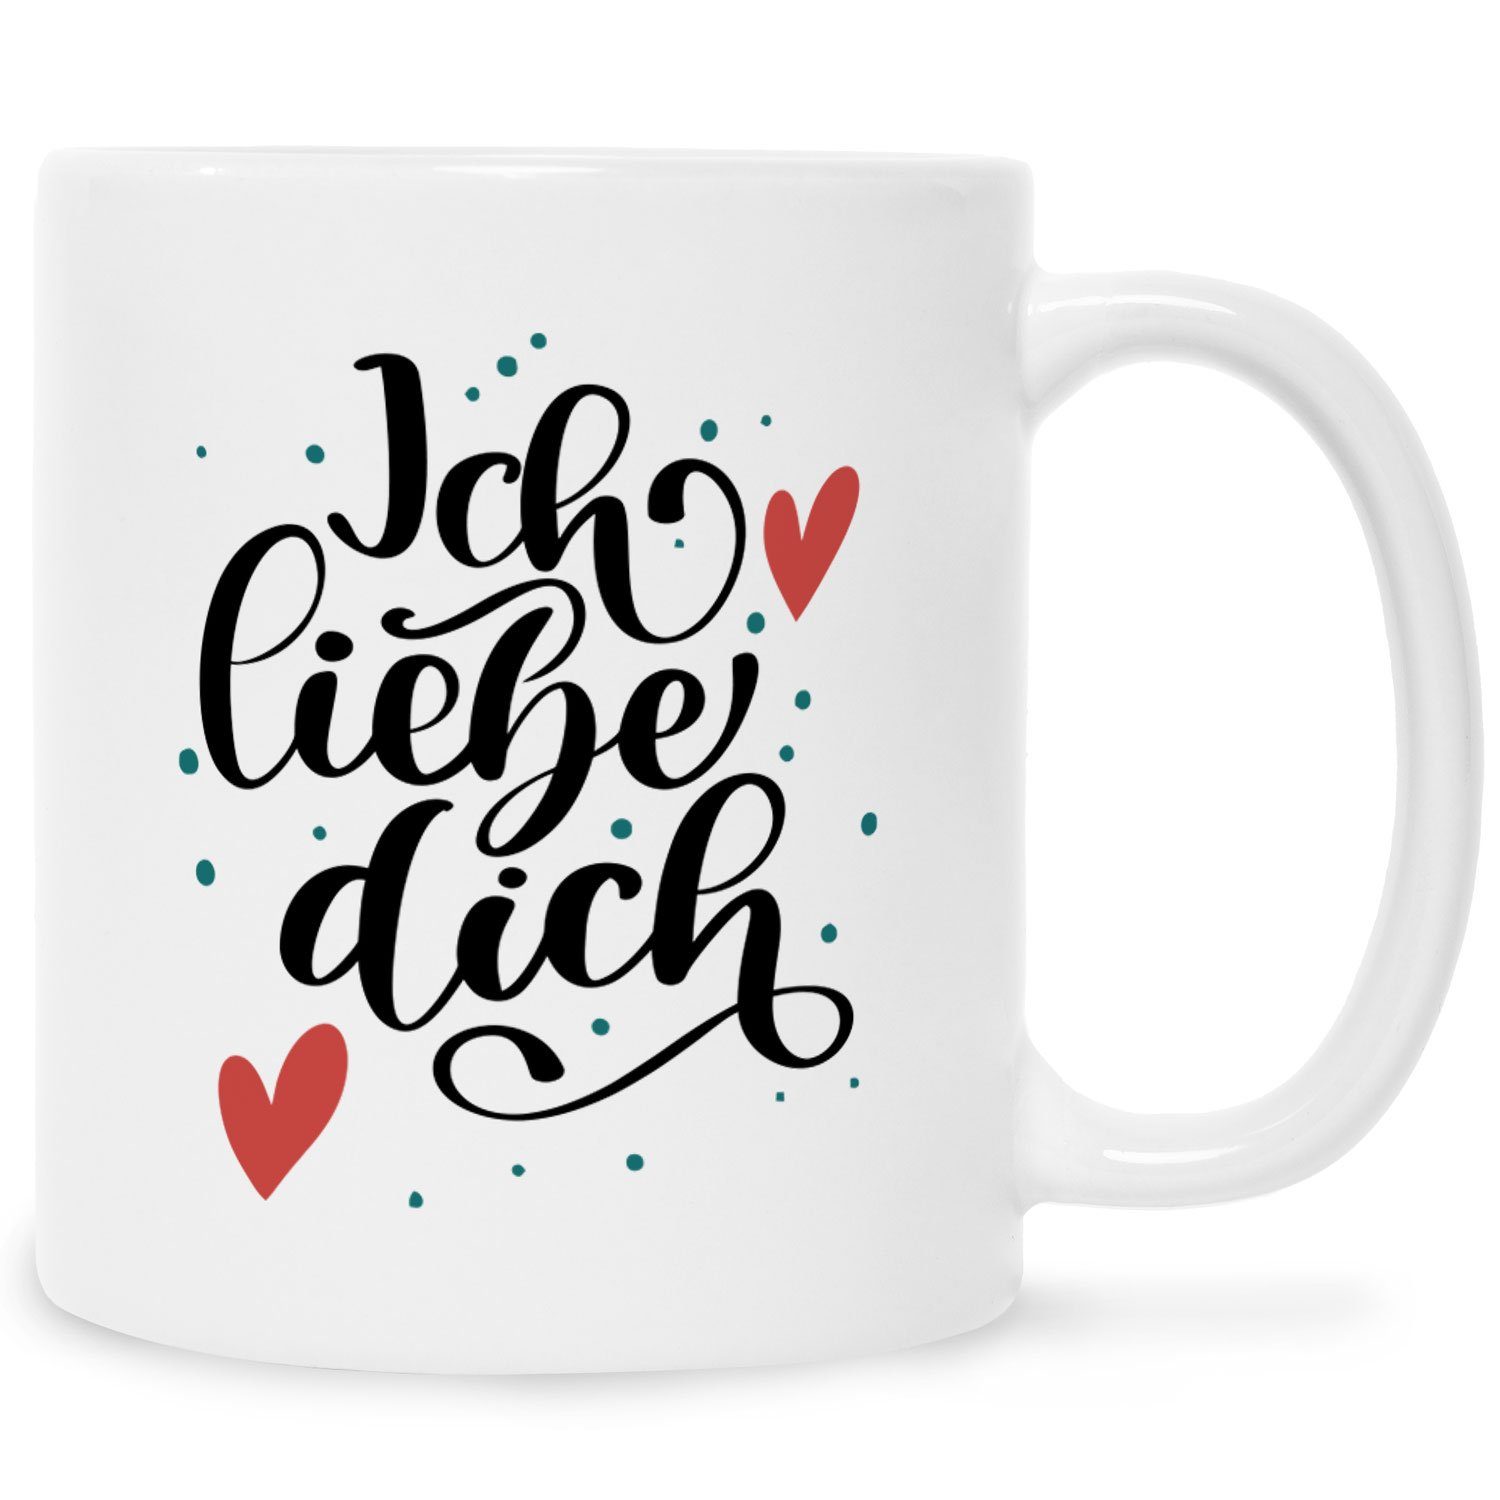 GRAVURZEILE Tasse mit Spruch - Ich liebe dich V2 - Herzliches Geschenk zum Valentinstag Weiß